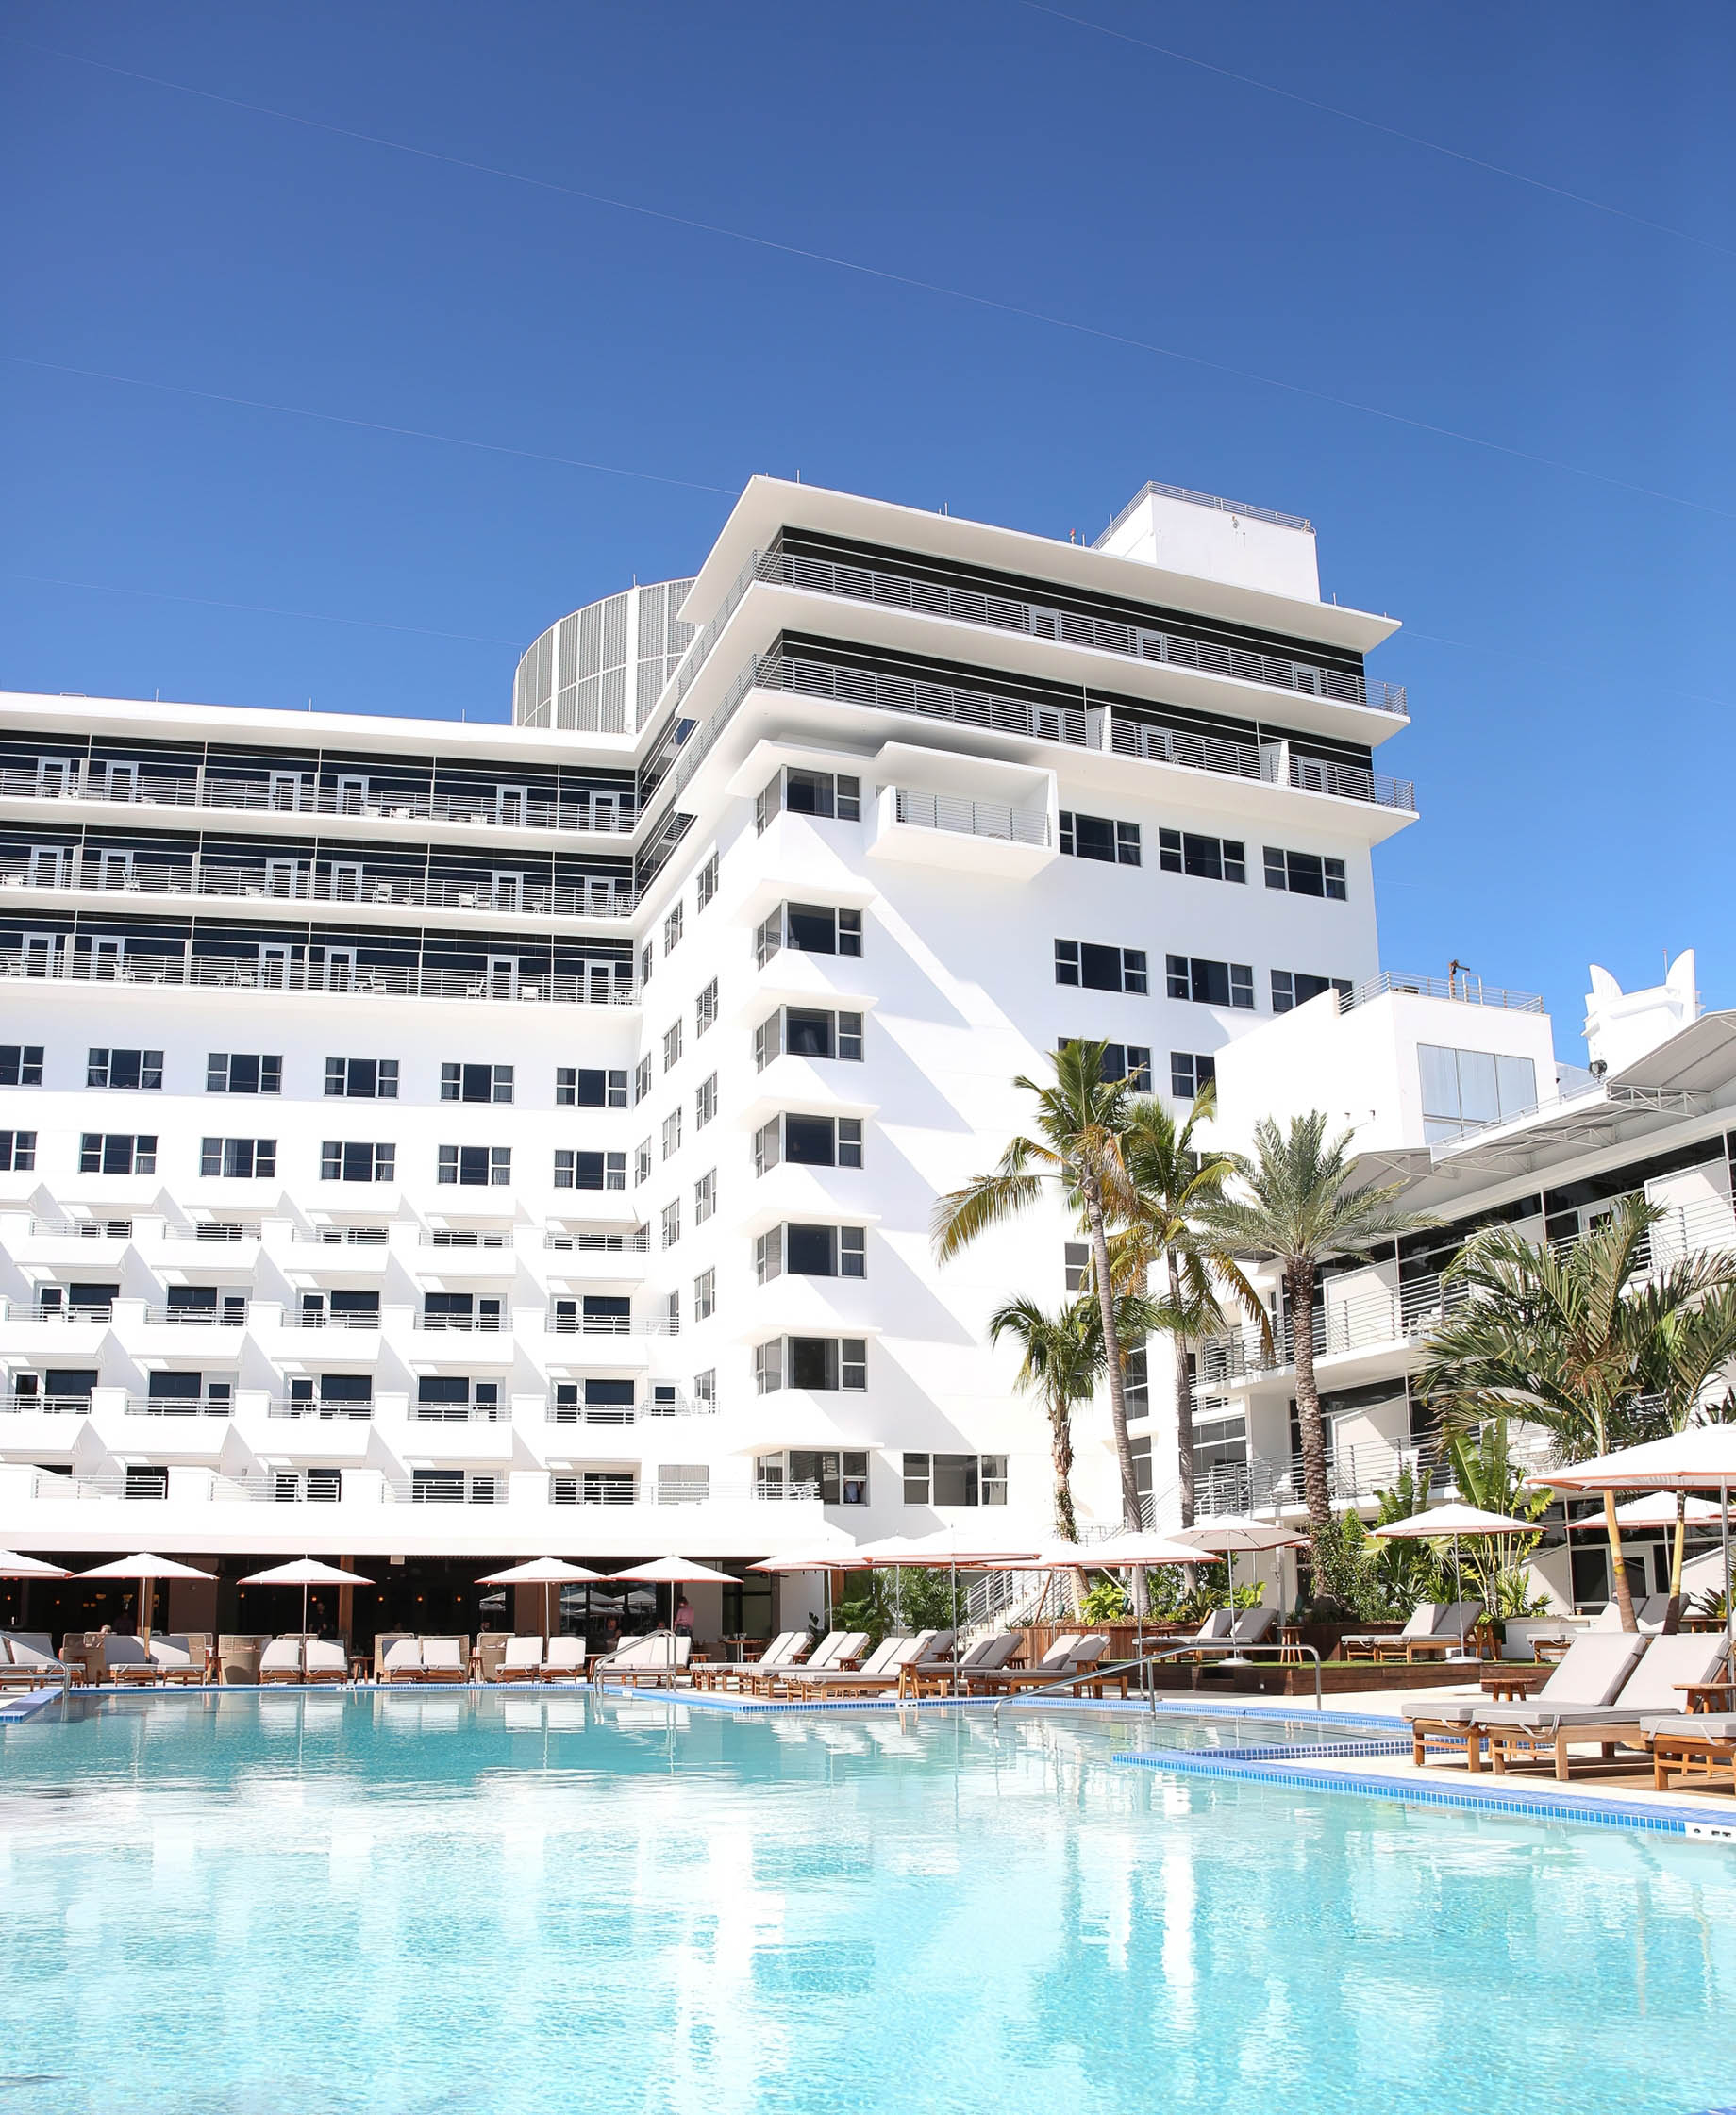 The Ritz-Carlton, South Beach Hotel – Miami Beach, FL, USA – Exterior Pool View